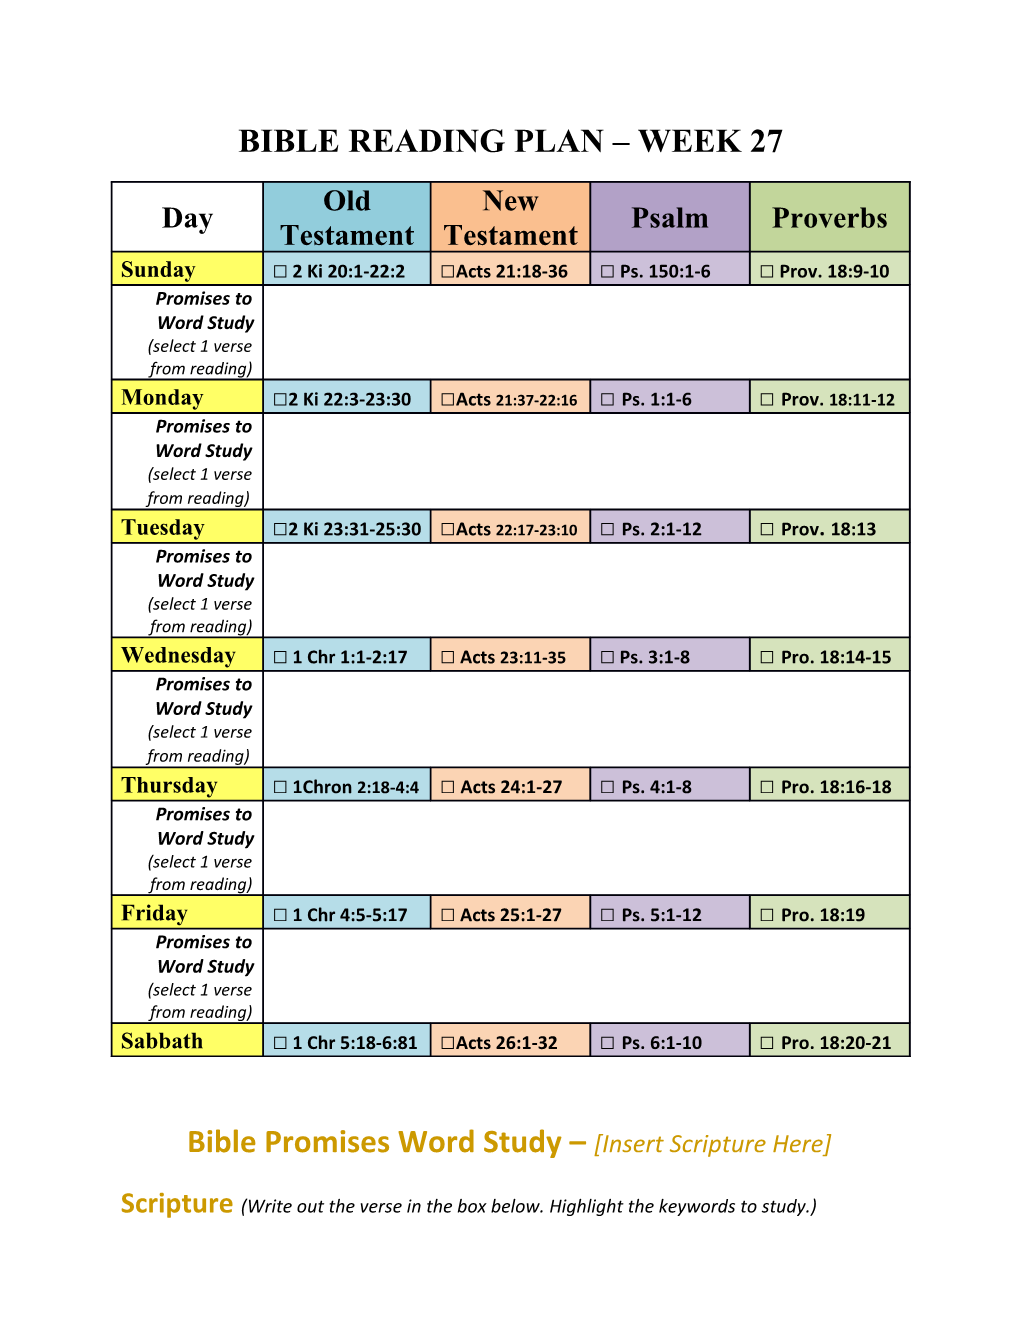 Bible Reading Plan Week 27